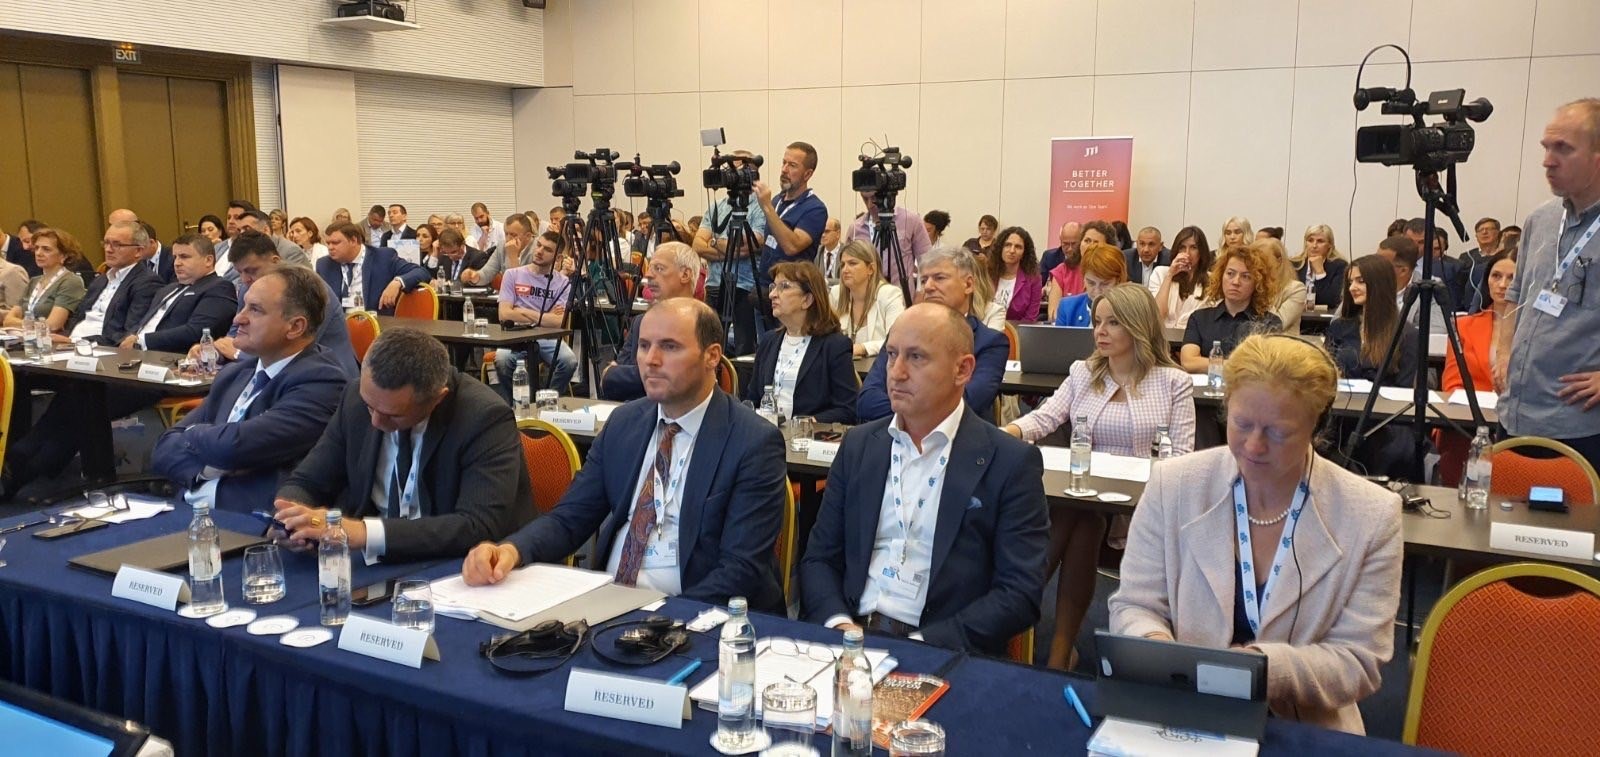 ATK merr pjesë në samitin e radhës në Beçiç